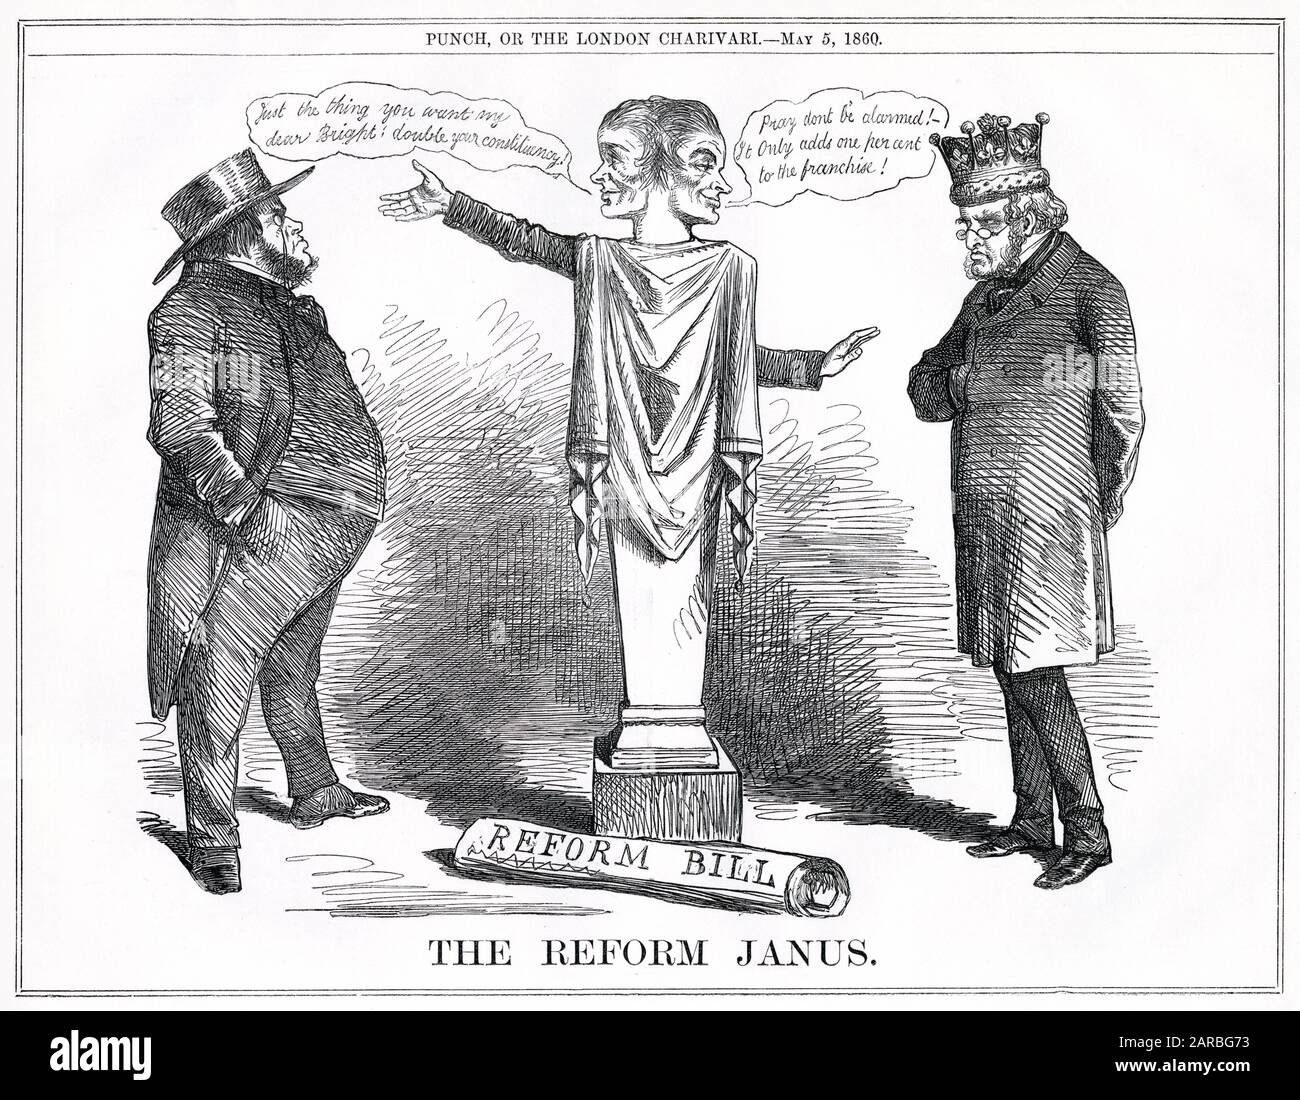 Cartoon, The Reform Janus -- un commento satirico sulle idee di Lord John Russell per la riforma politica, in cui tenta di tenere felici entrambe le parti. Dice a John Bright (liberale) che raddoppierà la sua circoscrizione e rassicura Lord Derby (conservatore) che aggiungerà solo l'uno per cento alla franchigia. Il risultato fu che nessuno era felice, e il Reform Bill di Russell fallì. Foto Stock